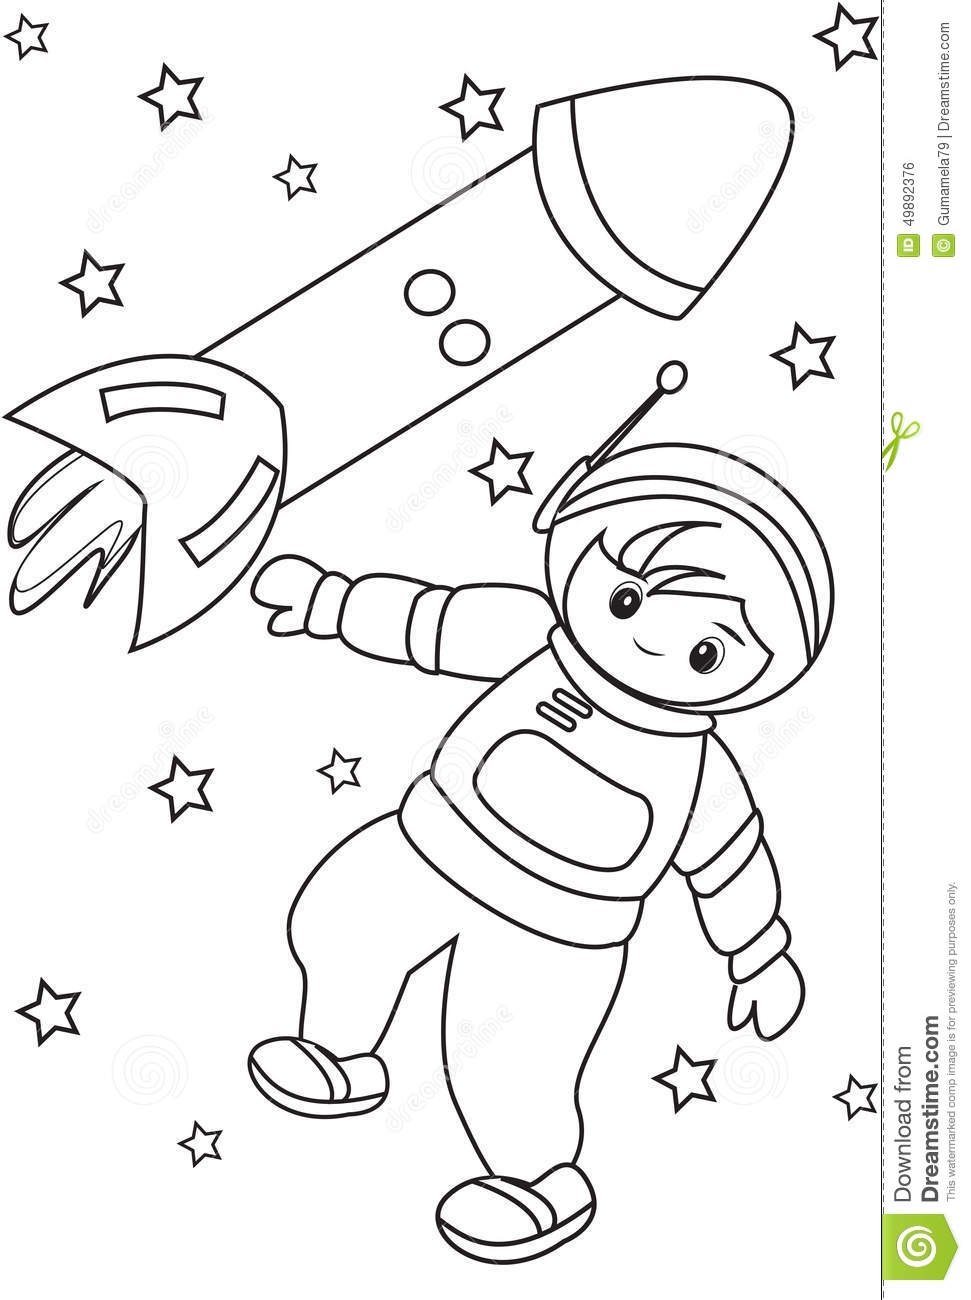 Шаблон космонавта для поделки ко дню космонавтики. Космос раскраска для детей. Космонавт раскраска для детей. Космонавтика раскраски для детей. Раскраска. В космосе.